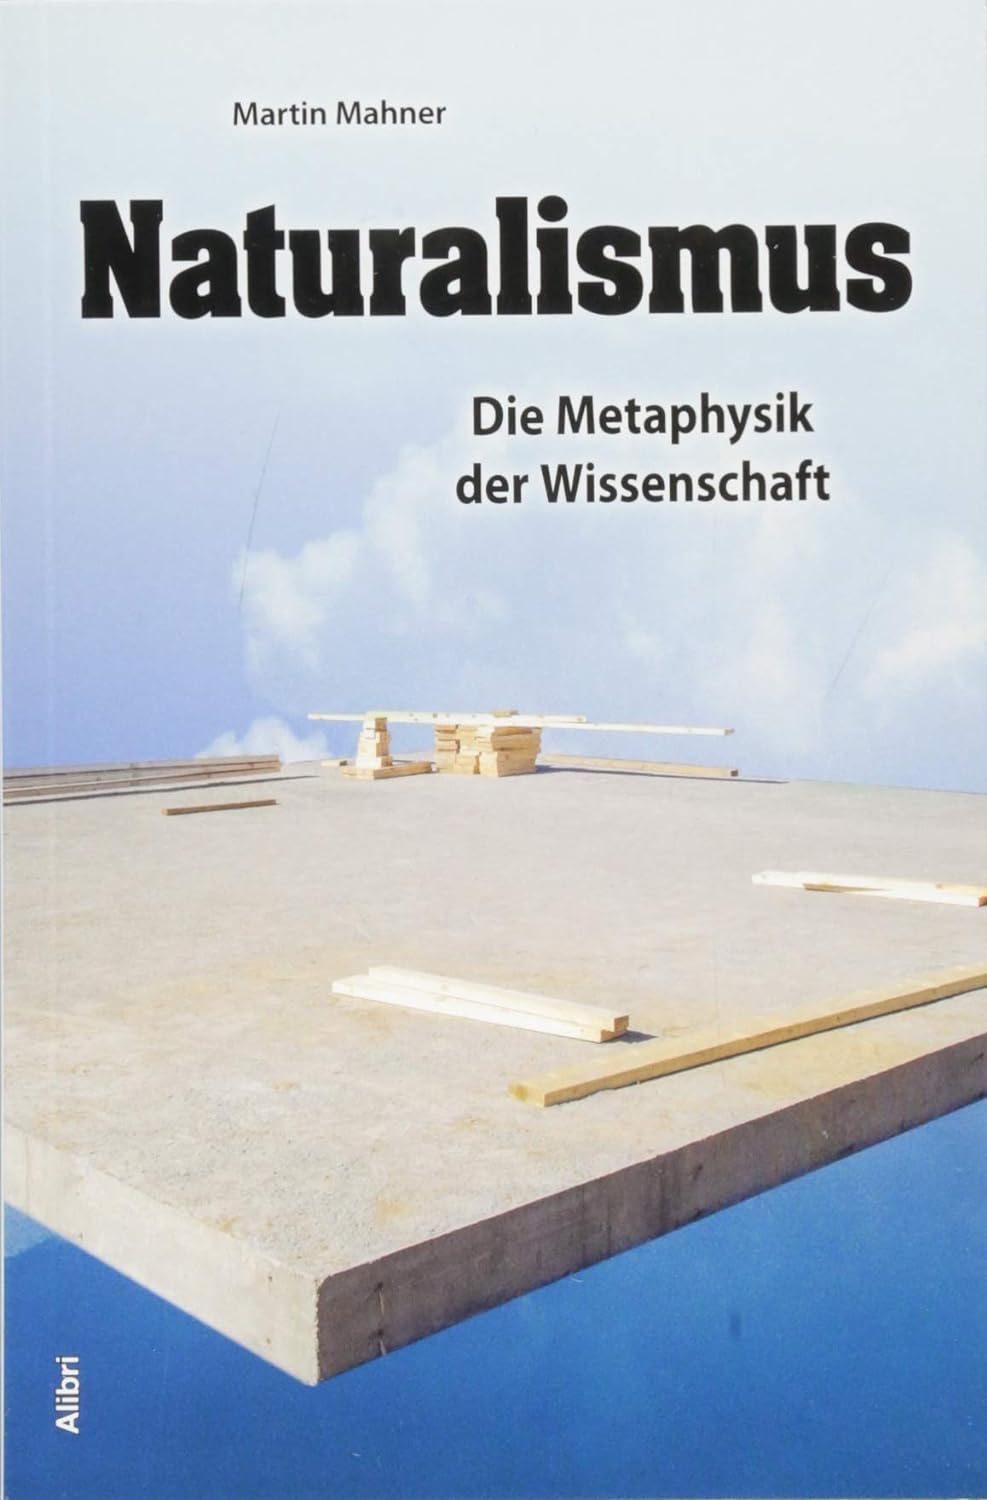 Martin Mahner: Naturalismus